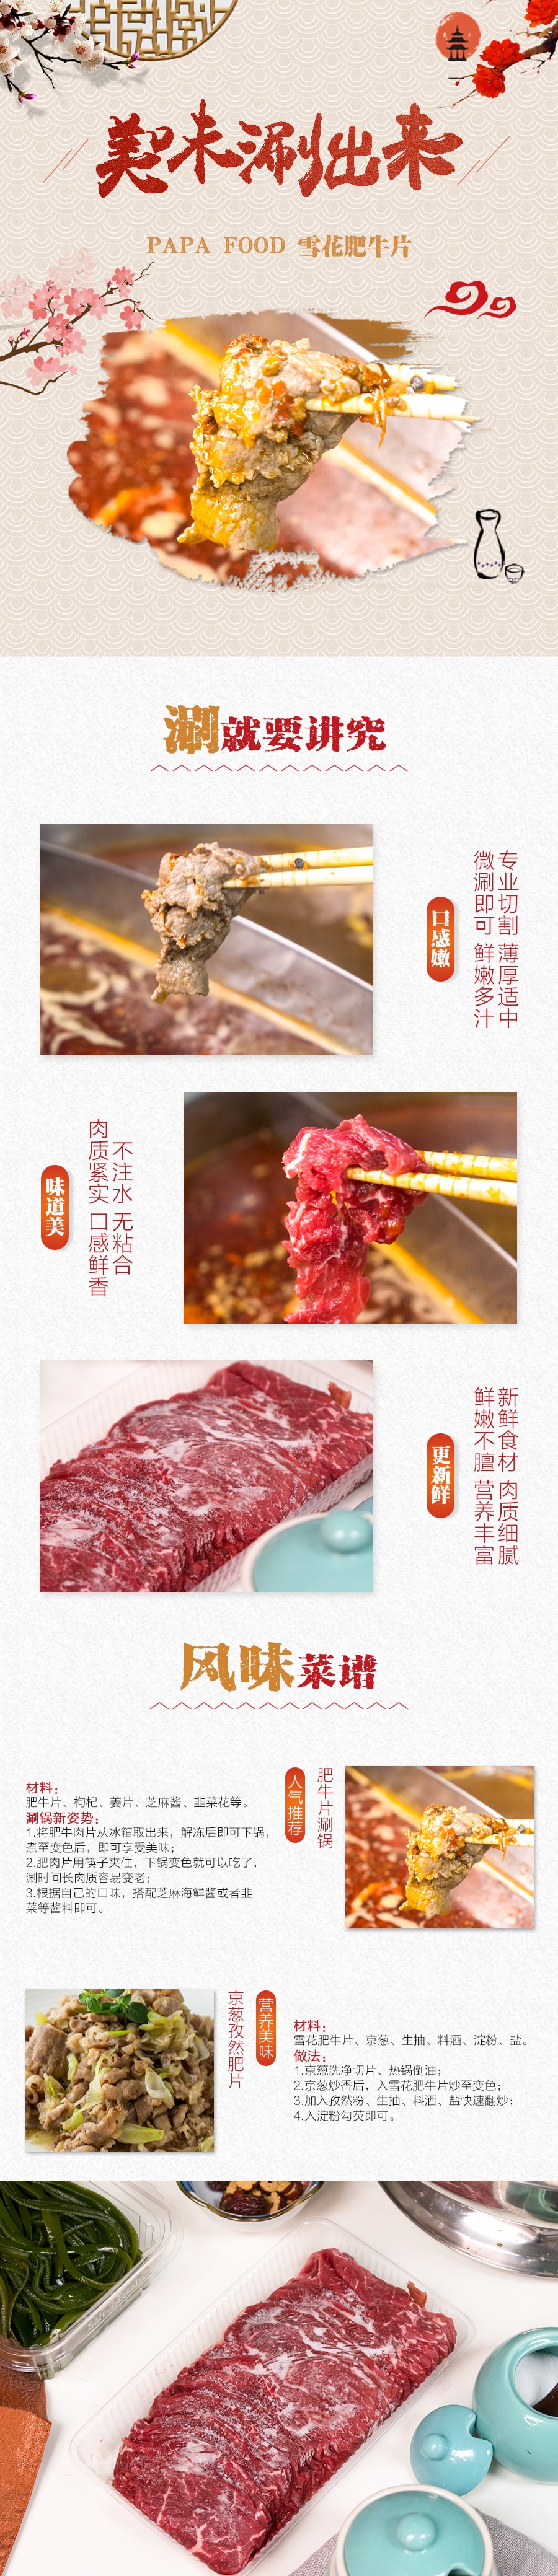 美国PAPA FOOD 火锅牛肉片 453g (注:每周一周二发货 )